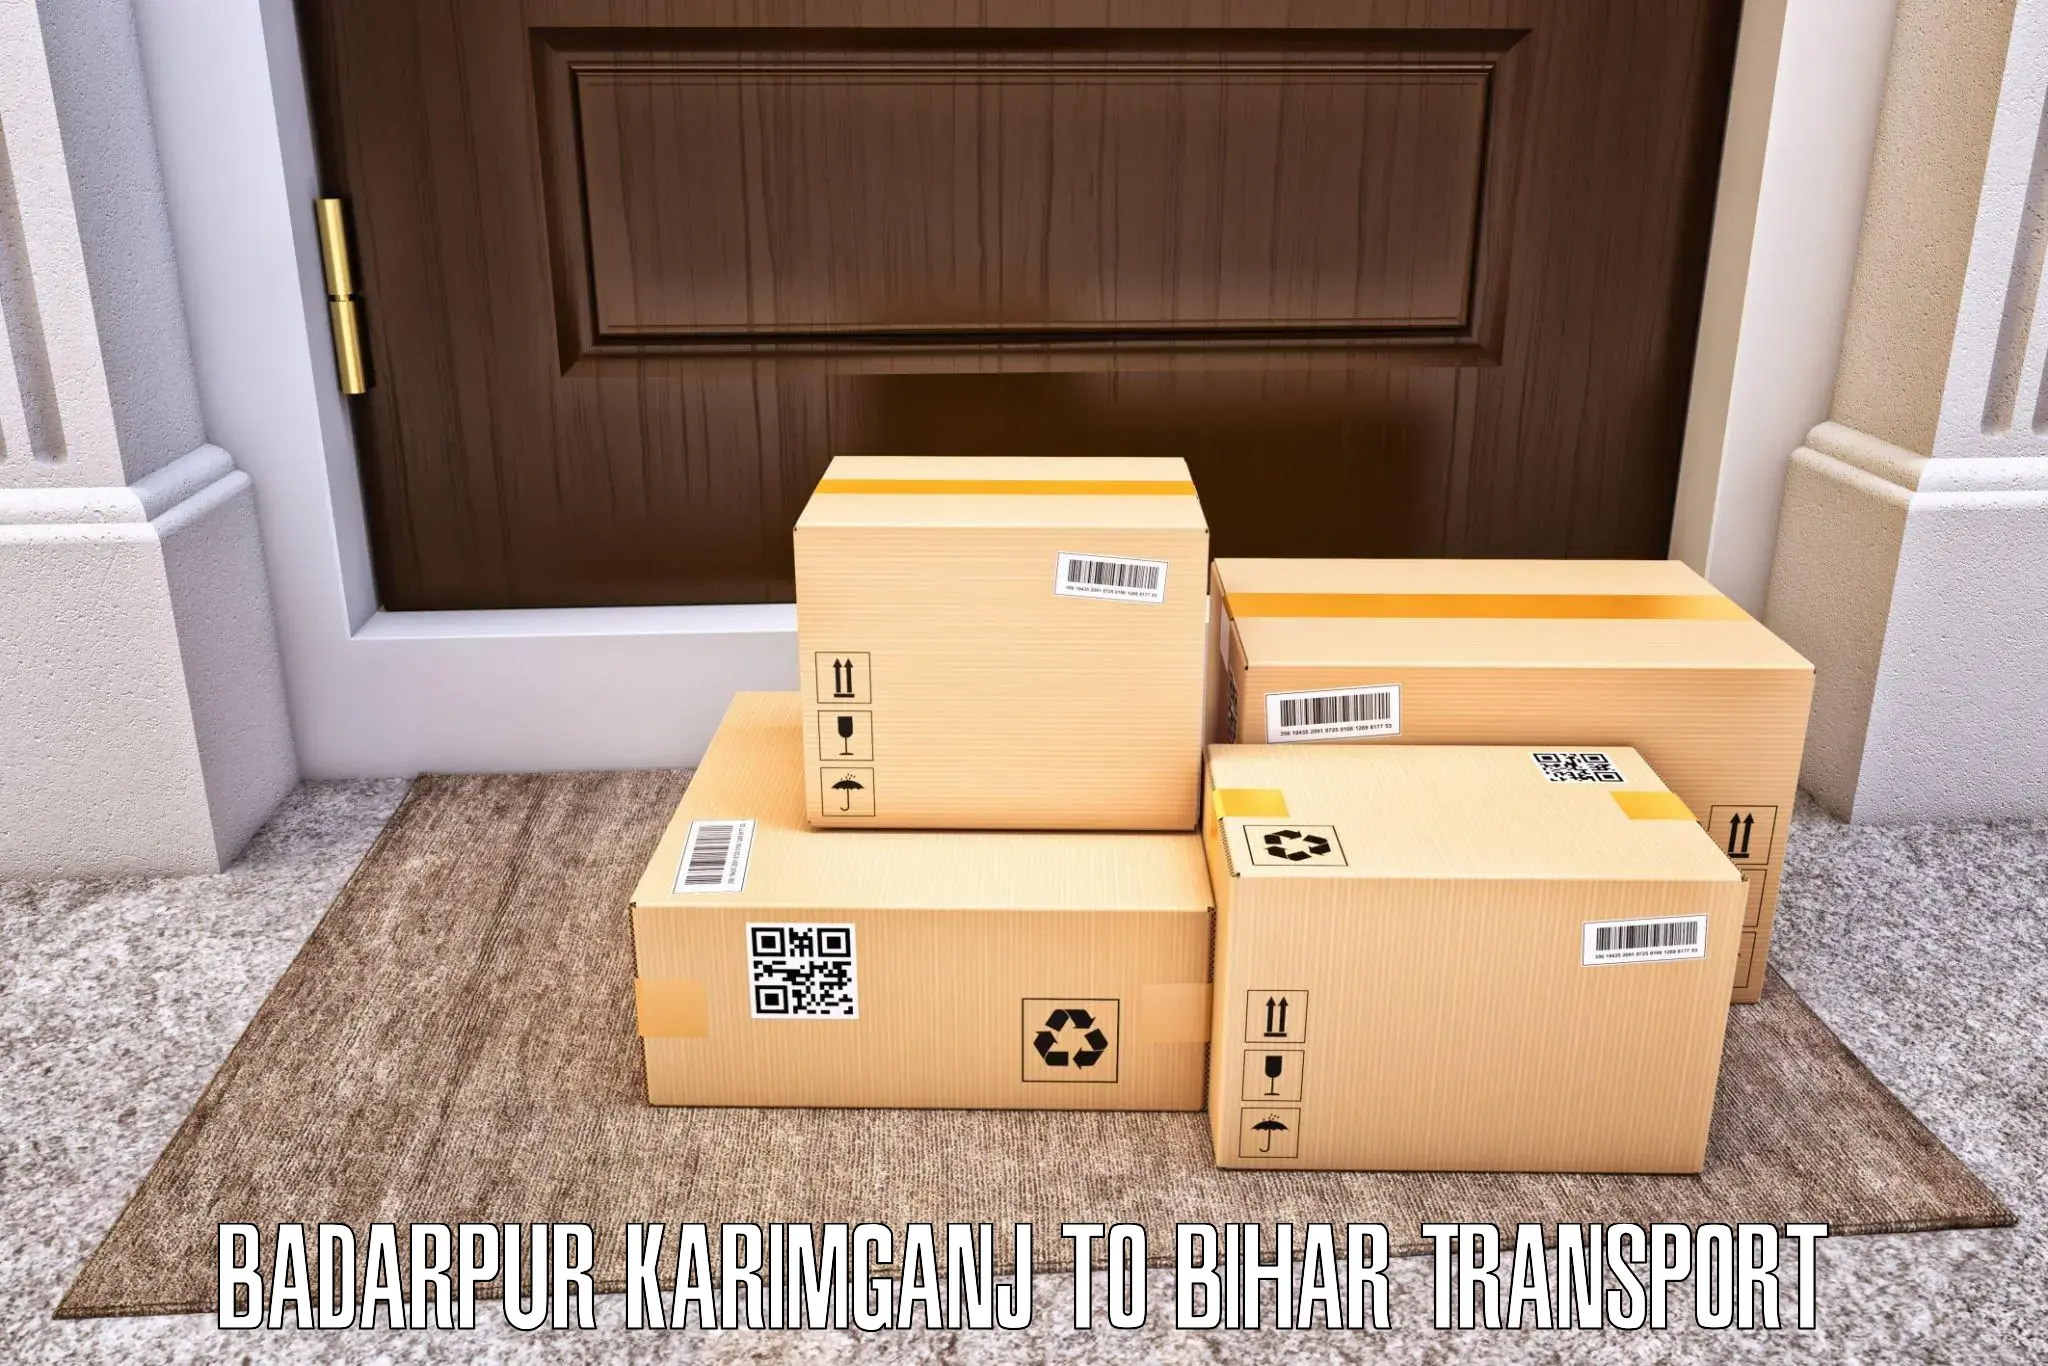 Daily parcel service transport Badarpur Karimganj to Simri Bakthiyarpur